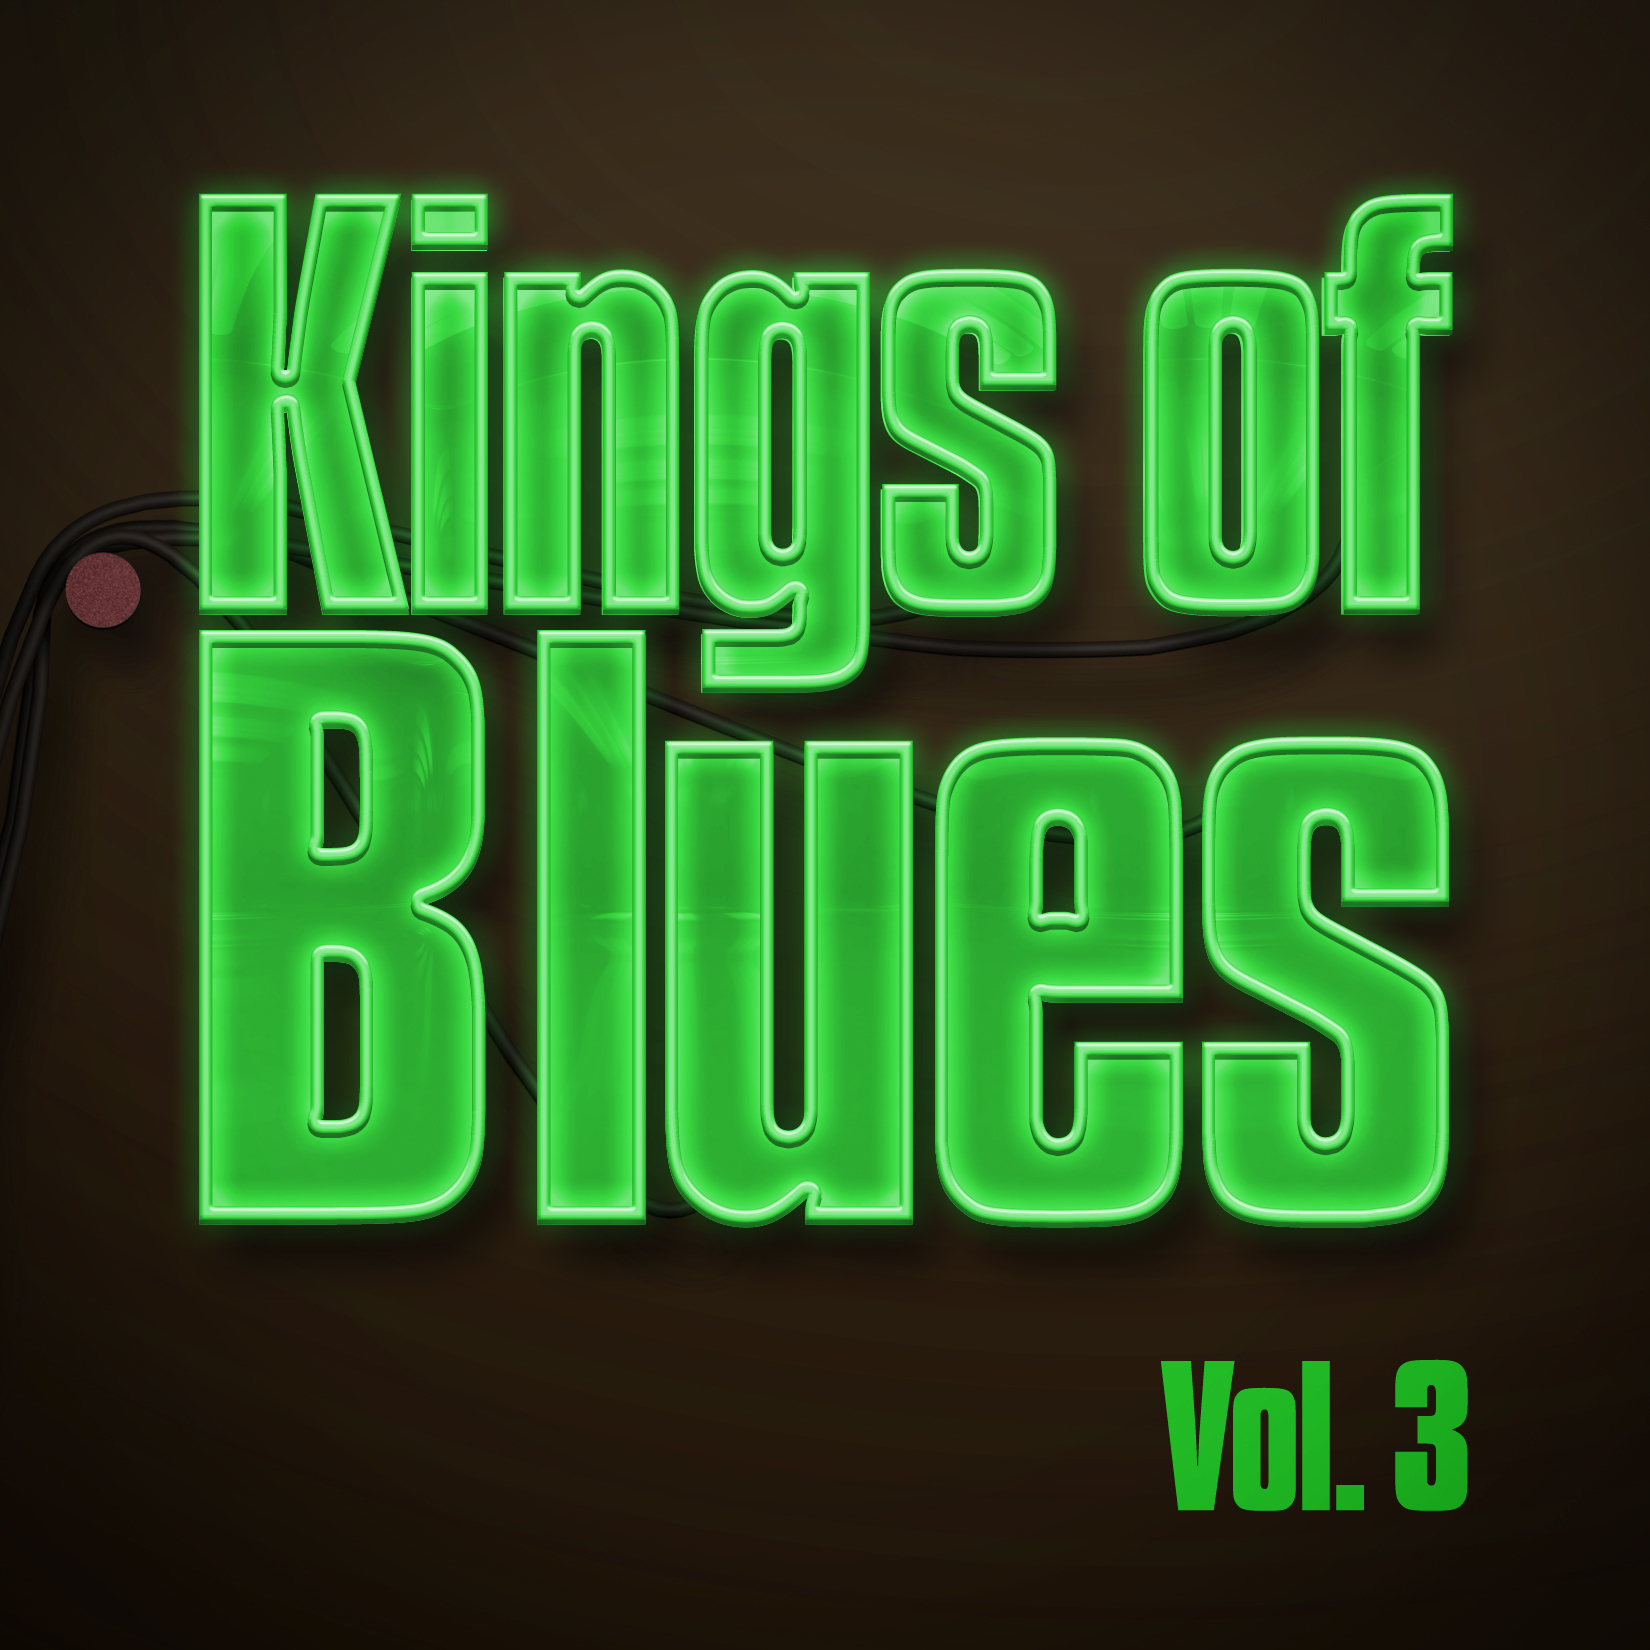 Kings of Blues - Vol. 3